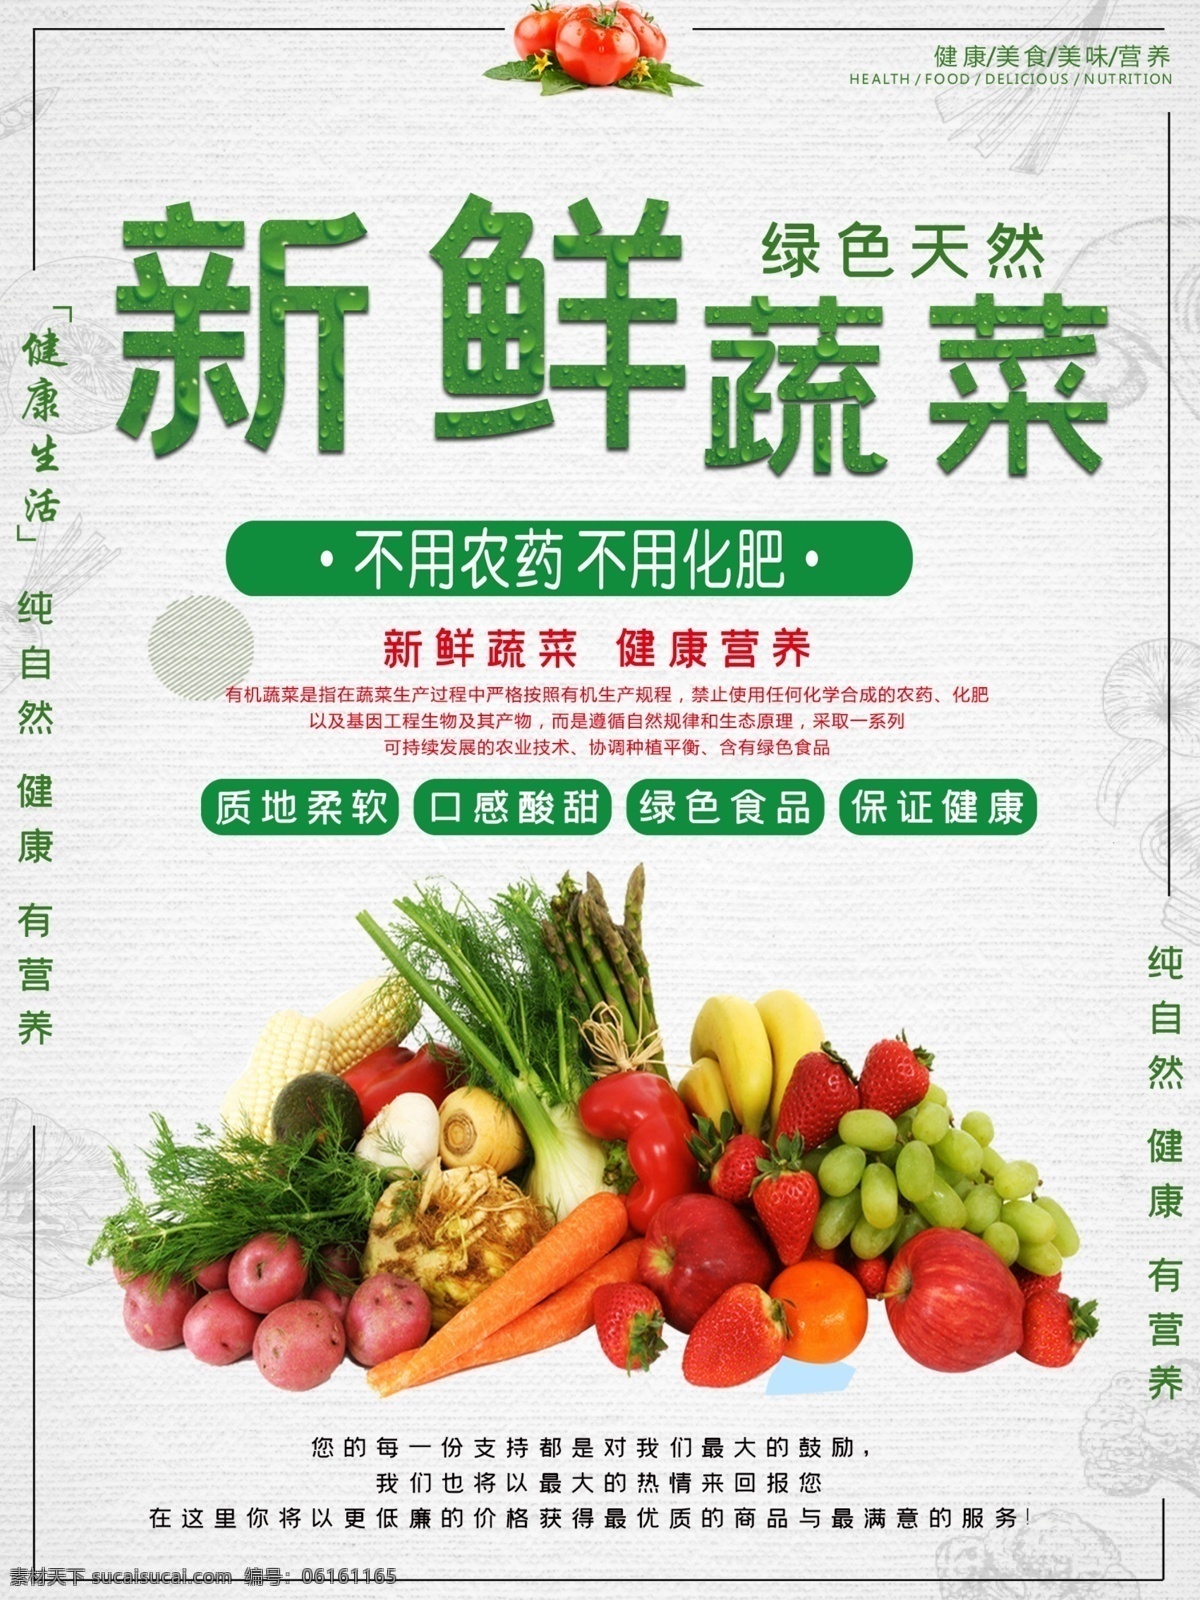 新鲜 有机 蔬菜 海报 绿色海报 农产品海报 中国海报 海报绿色 海报中国 绿色农产品 美食宣传海报 中国美食 绿色清新 清新绿色 绿色美食